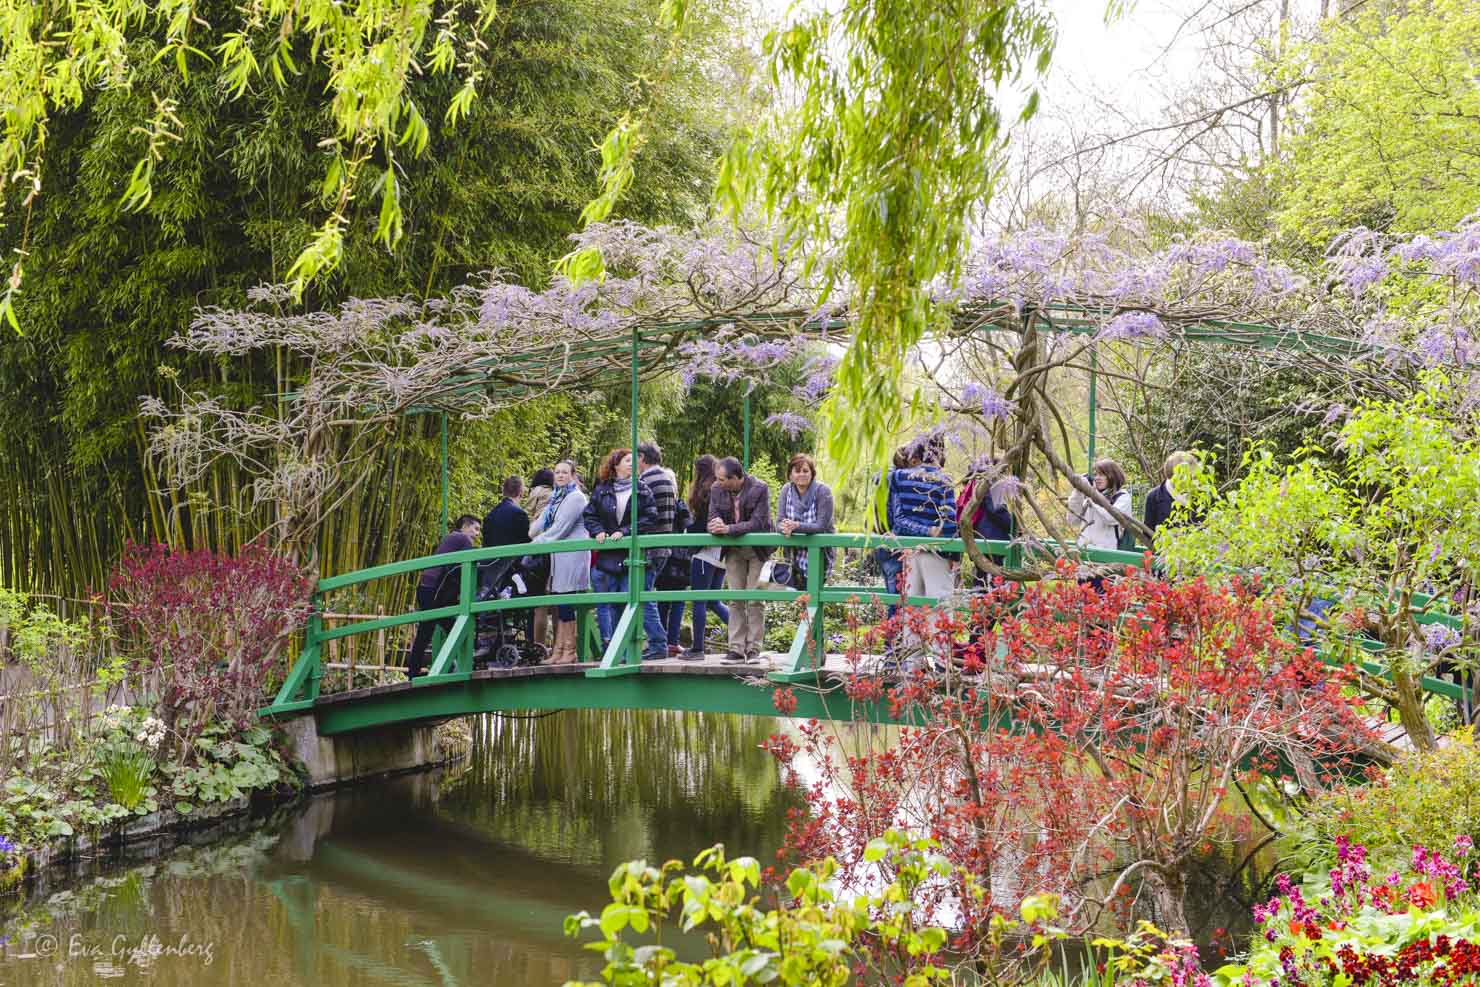 I Monets trädgård finns en grön bro med blåregn över en sjö som Monet ofta avbildade i sina tavlor